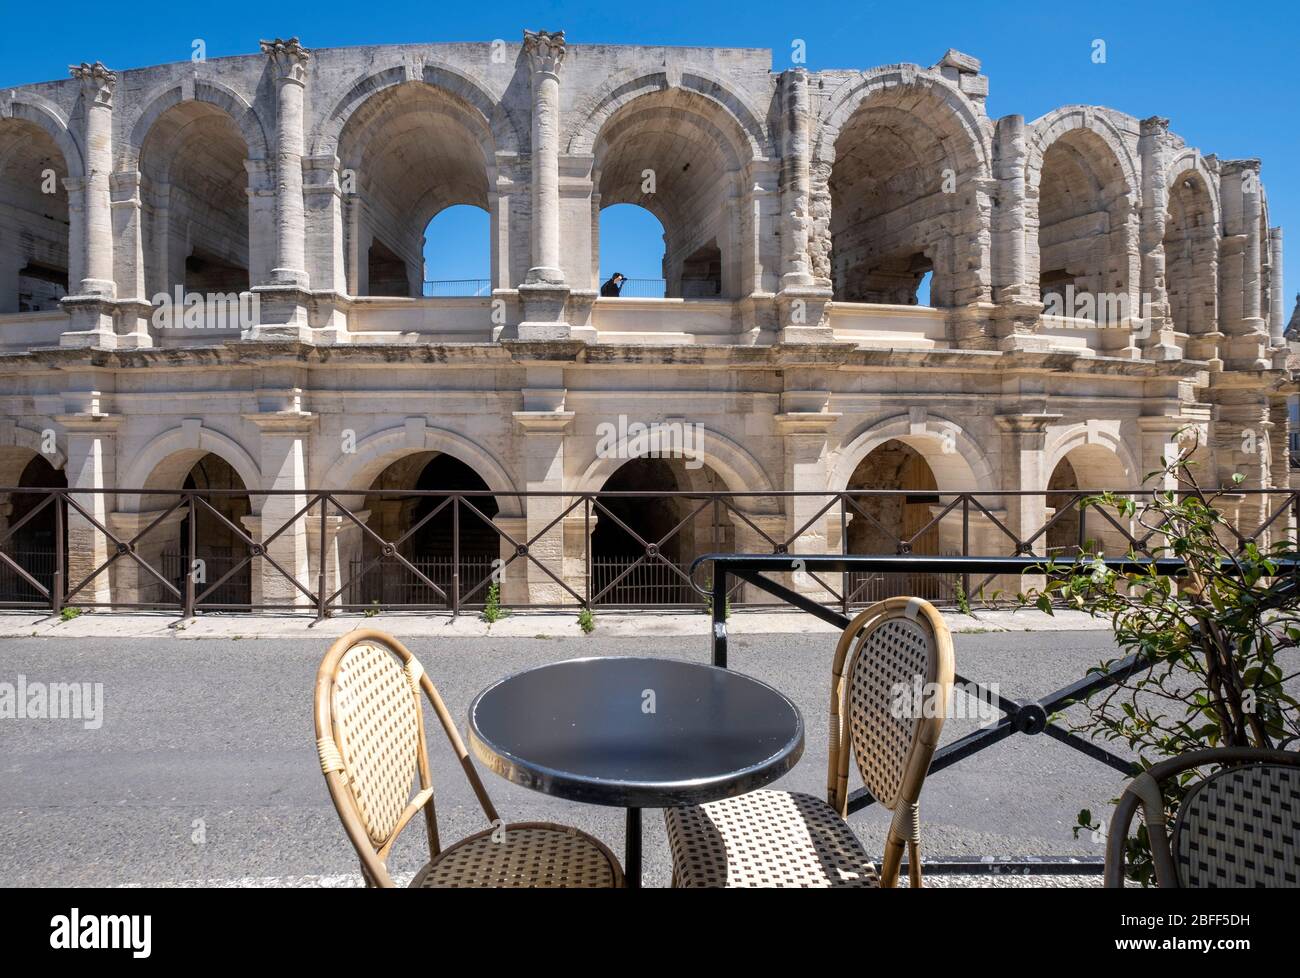 Römisches Amphitheater in Arles, Frankreich, Europa Stockfotografie - Alamy